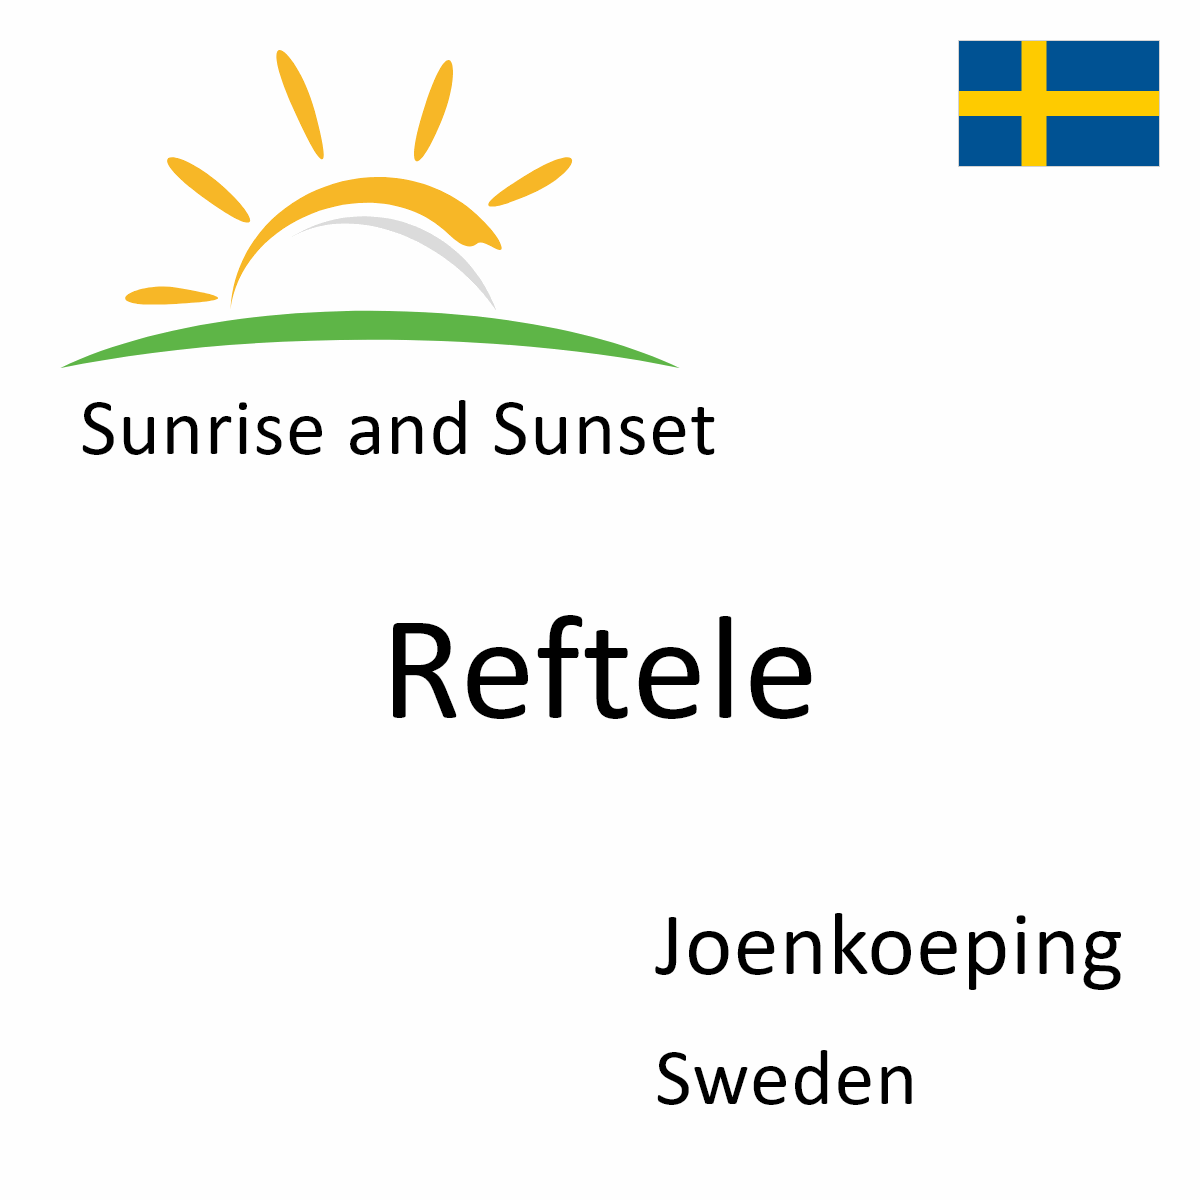 reftele dating sweden)